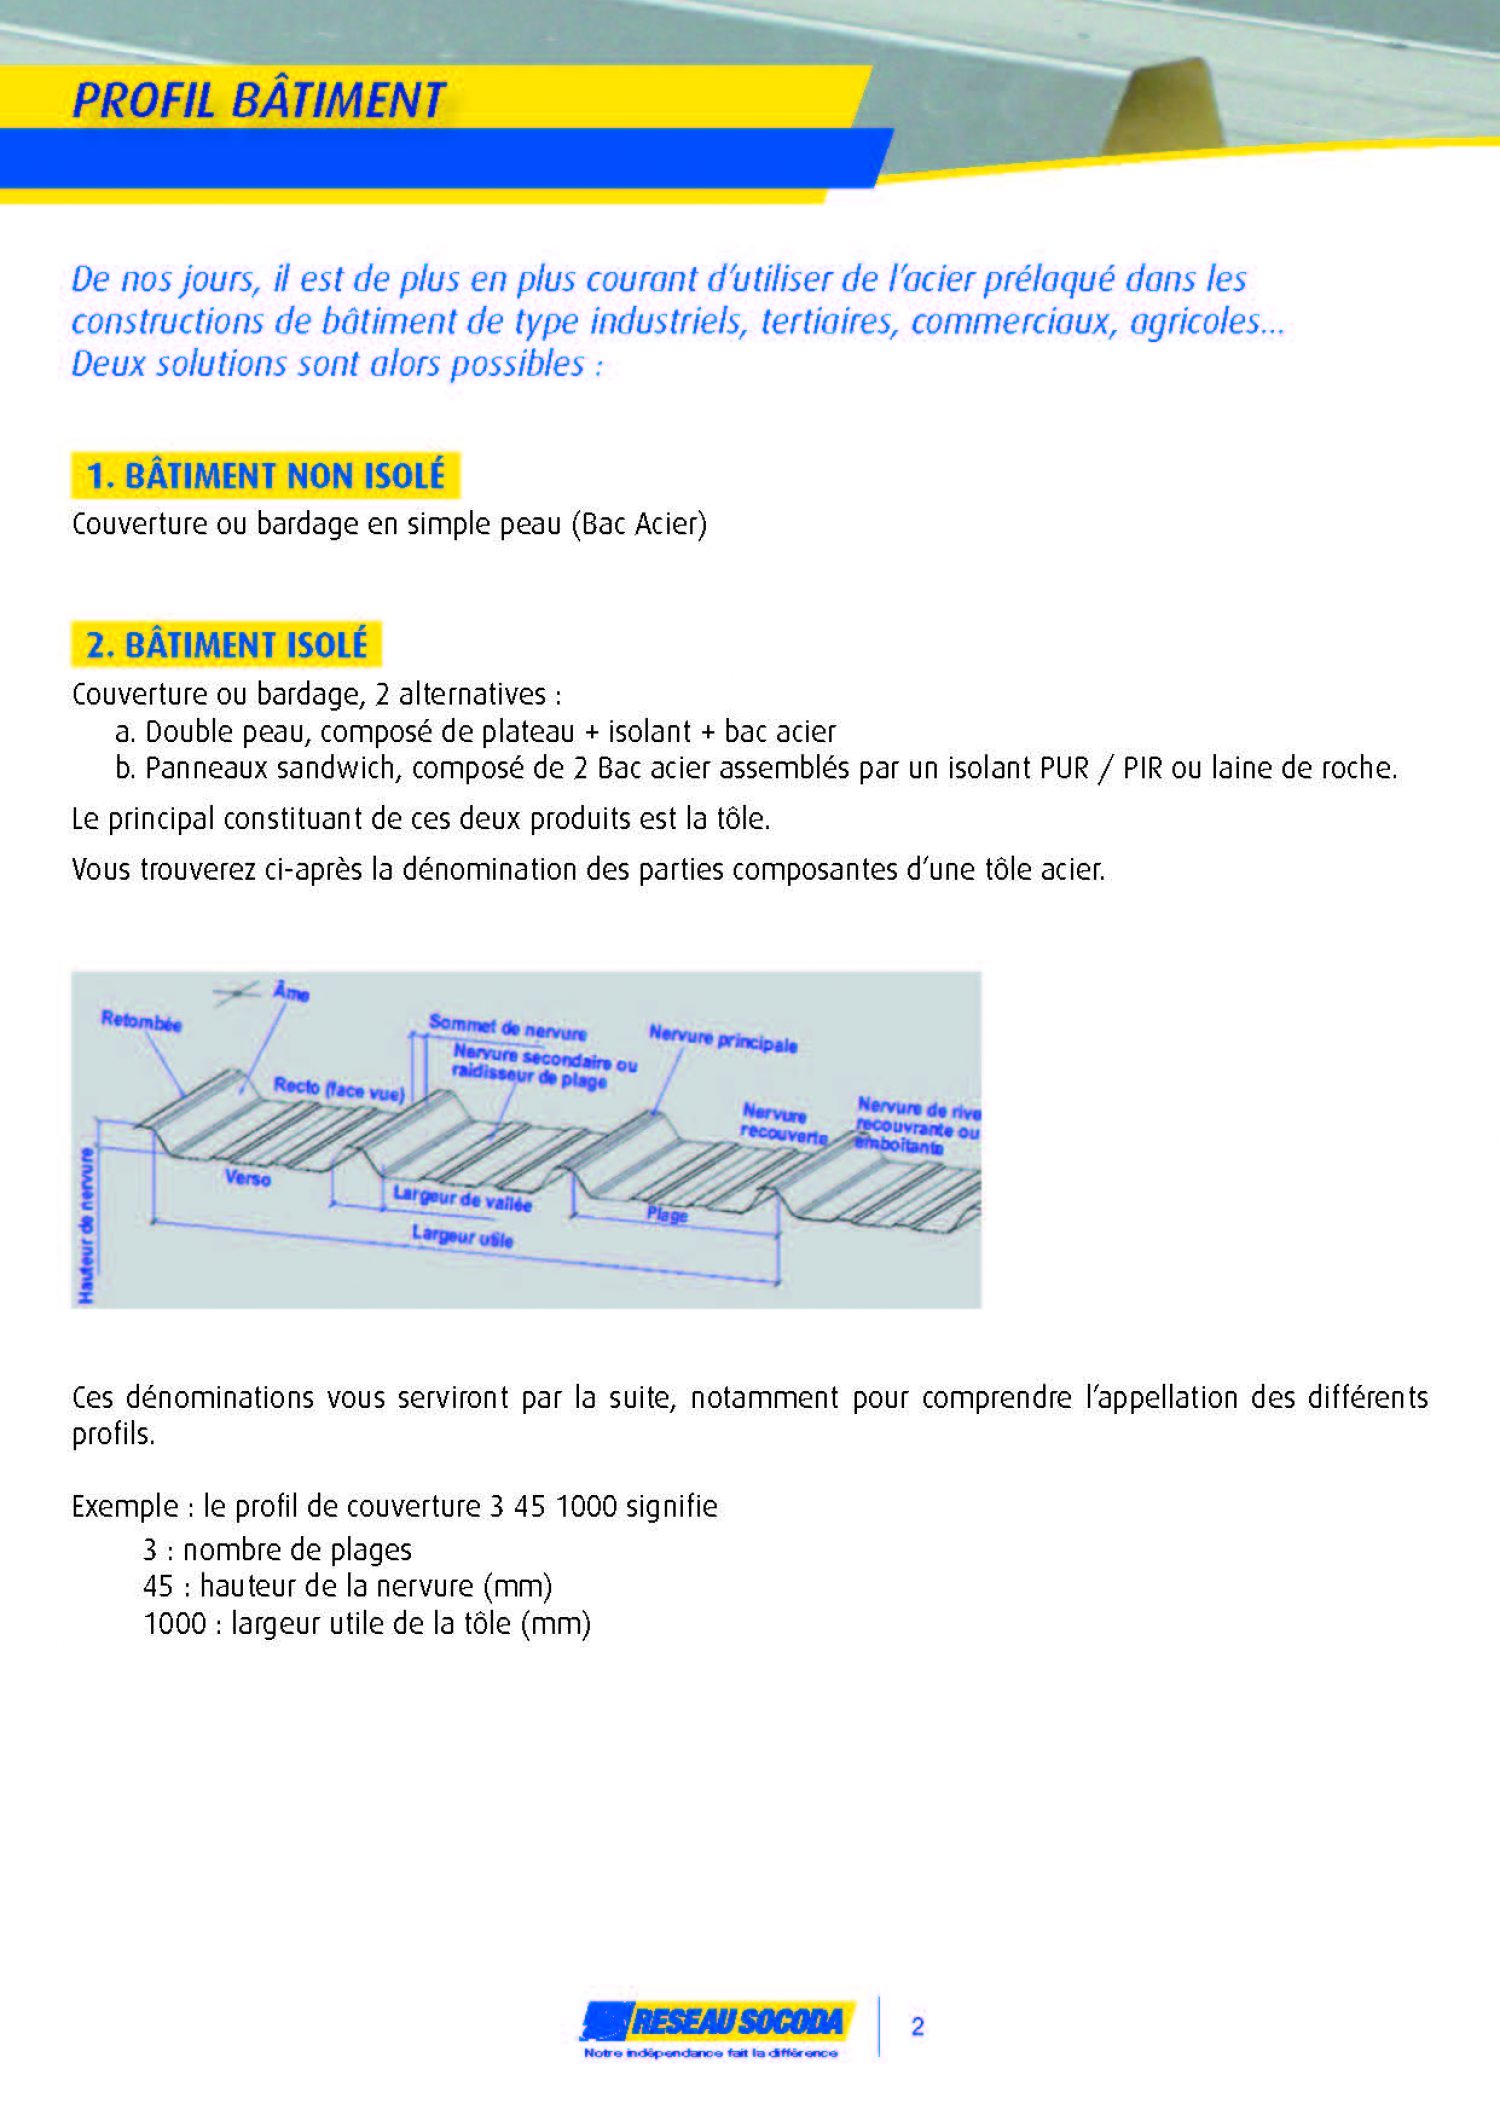 GERMOND_2014 PROFIL BATIMENT_20140324-184231_Page_02